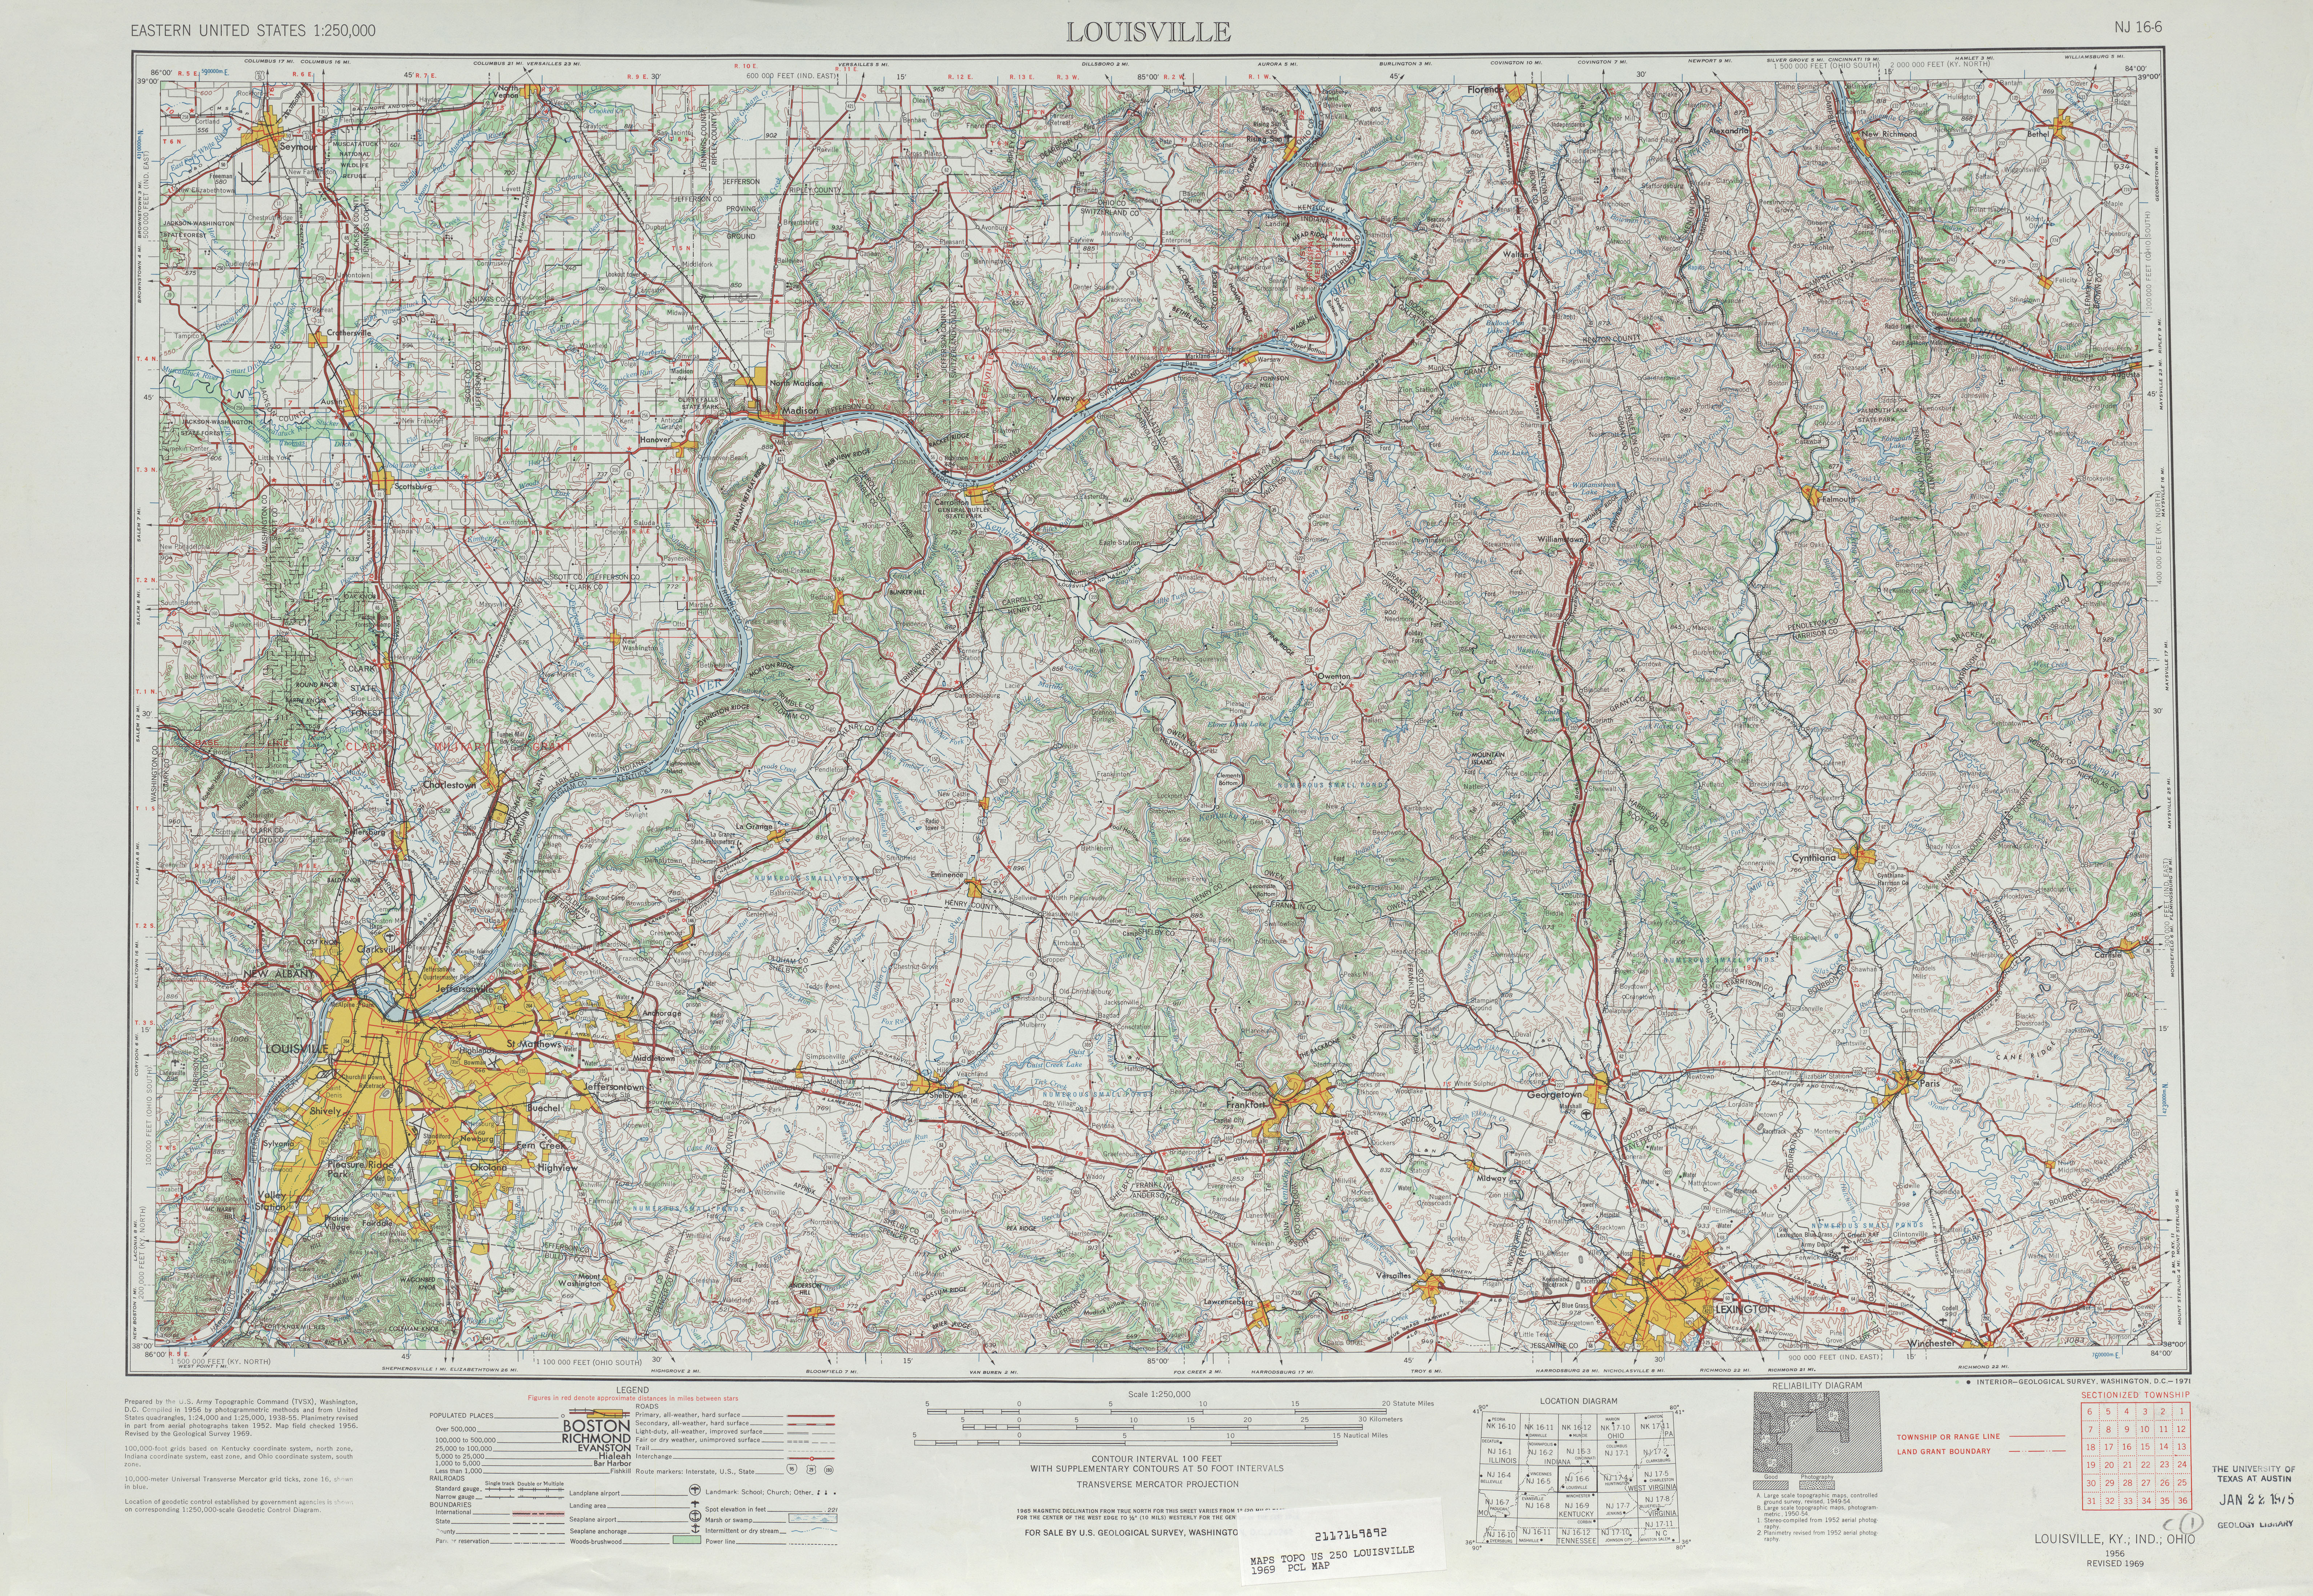 Hoja Louisville del Mapa Topográfico de los Estados Unidos 1969